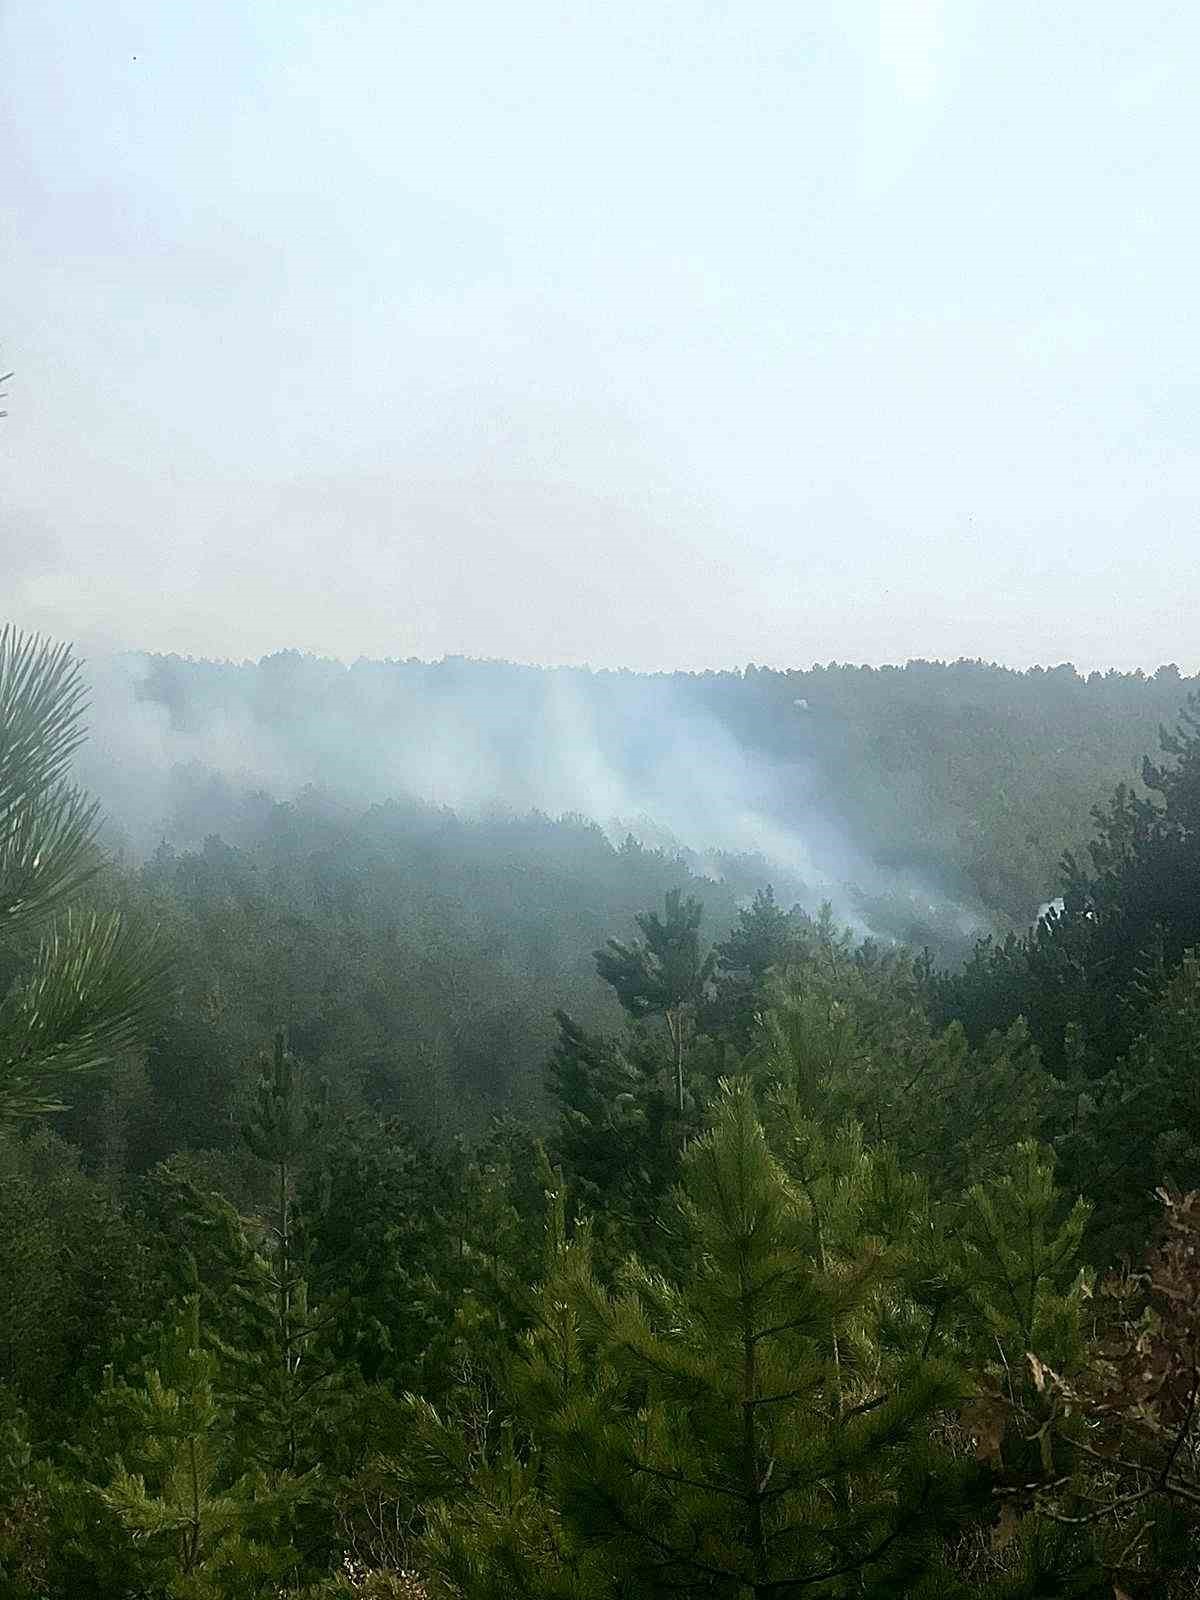 Eskişehir’de çıkan orman yangınında 1 hektarlık alan zarar gördü
